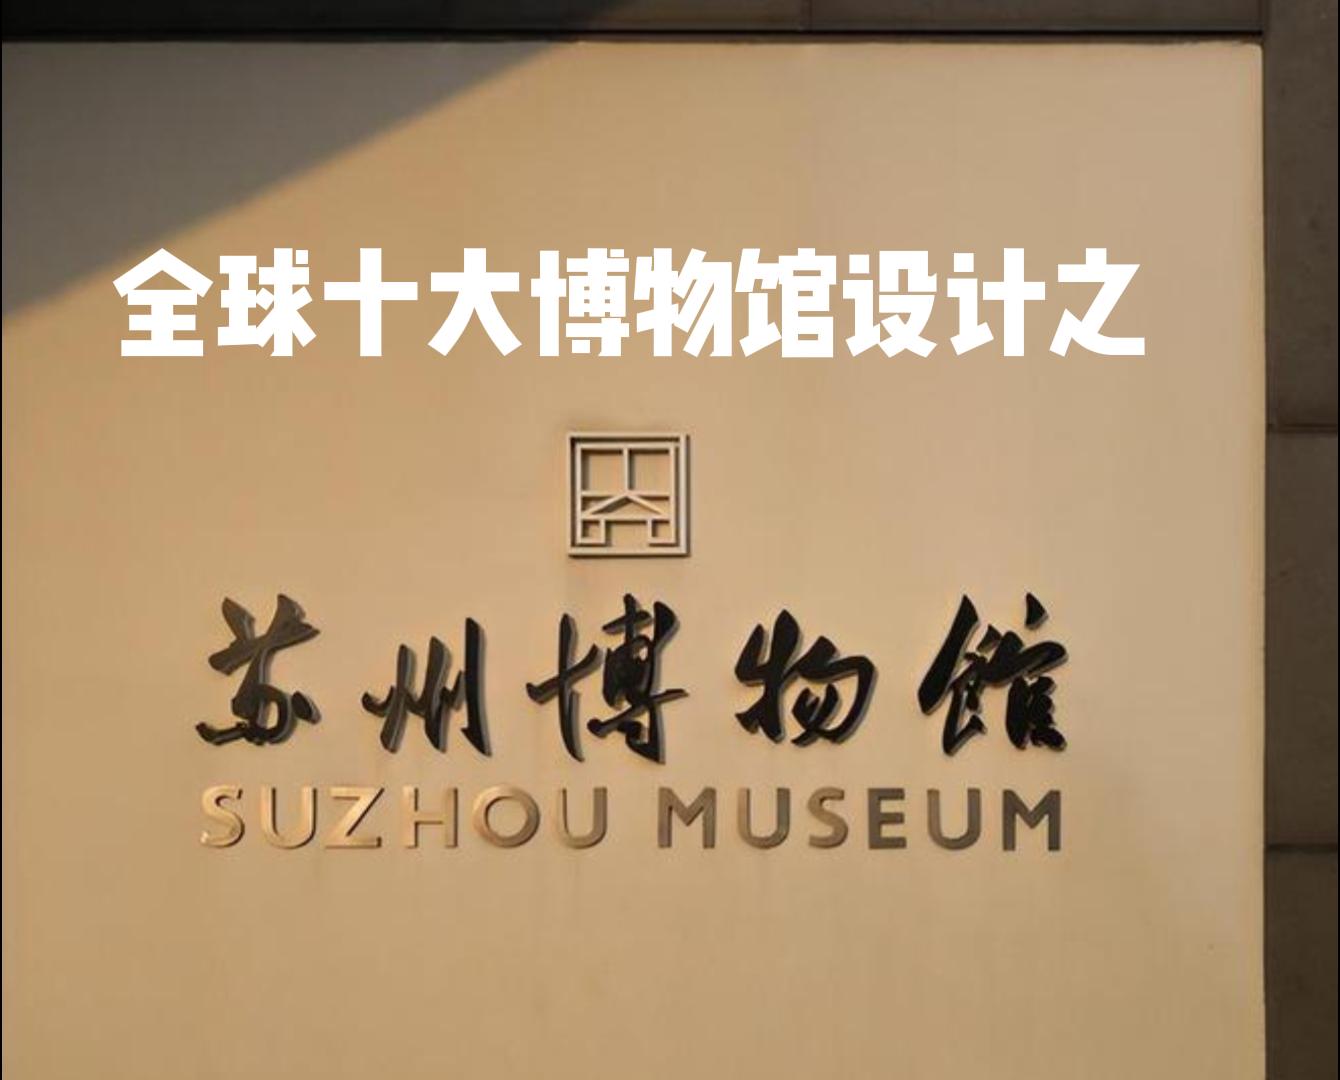 全球十大博物馆设计赏析之《苏州博物馆》